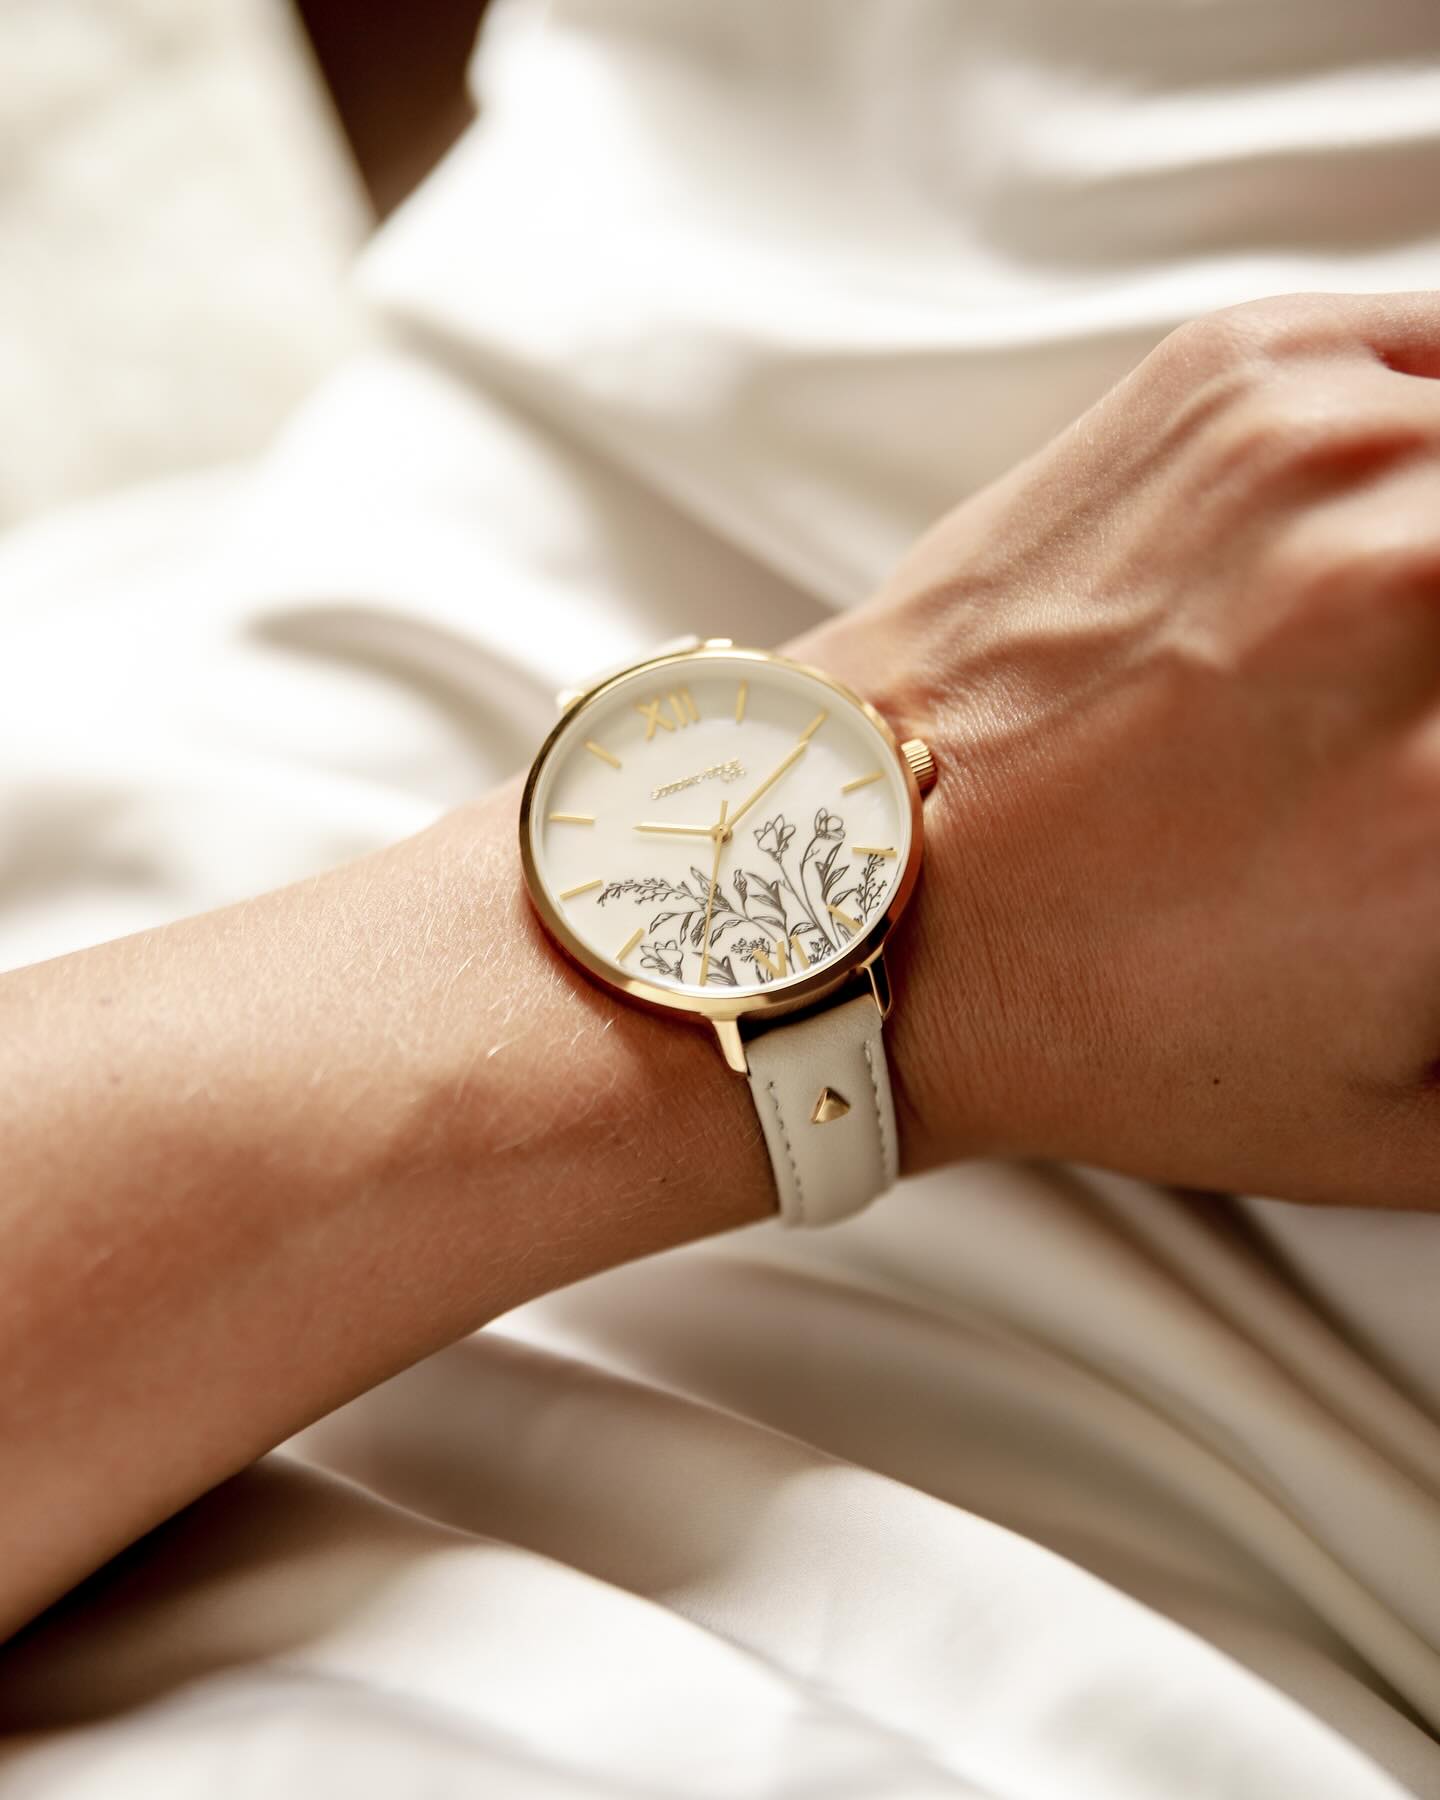 Láska na první pohled 🫶🏻

Zlaté pouzdro a jemné květinové motivy dodávají hodinkám šmrnc a sofistikovanost. Pohodlný kožený řemínkem zajišťuje celodenní komfort.🦢 

Objevte i vy kouzlo hodinek z kolekce Sunday Rose na www.vlahova.cz. 

#JVD #watch #watches #jewelry #jewellery #accessories #detail #design #ootdfashion